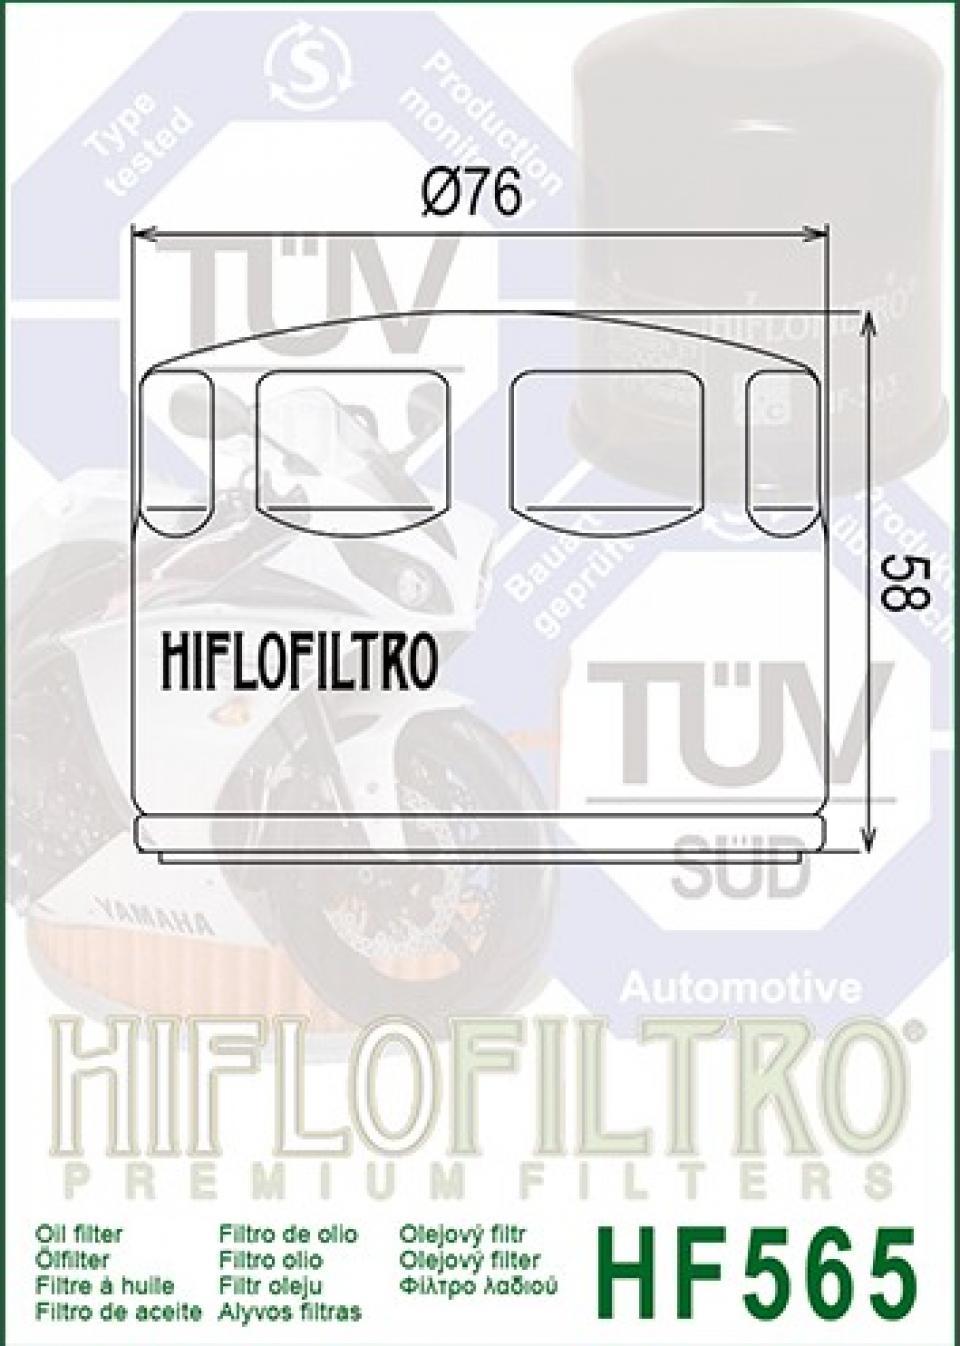 Filtre à huile Hiflo Filtro pour Moto pour Moto Guzzi 1400 Audace Abs 2015-2016 Neuf